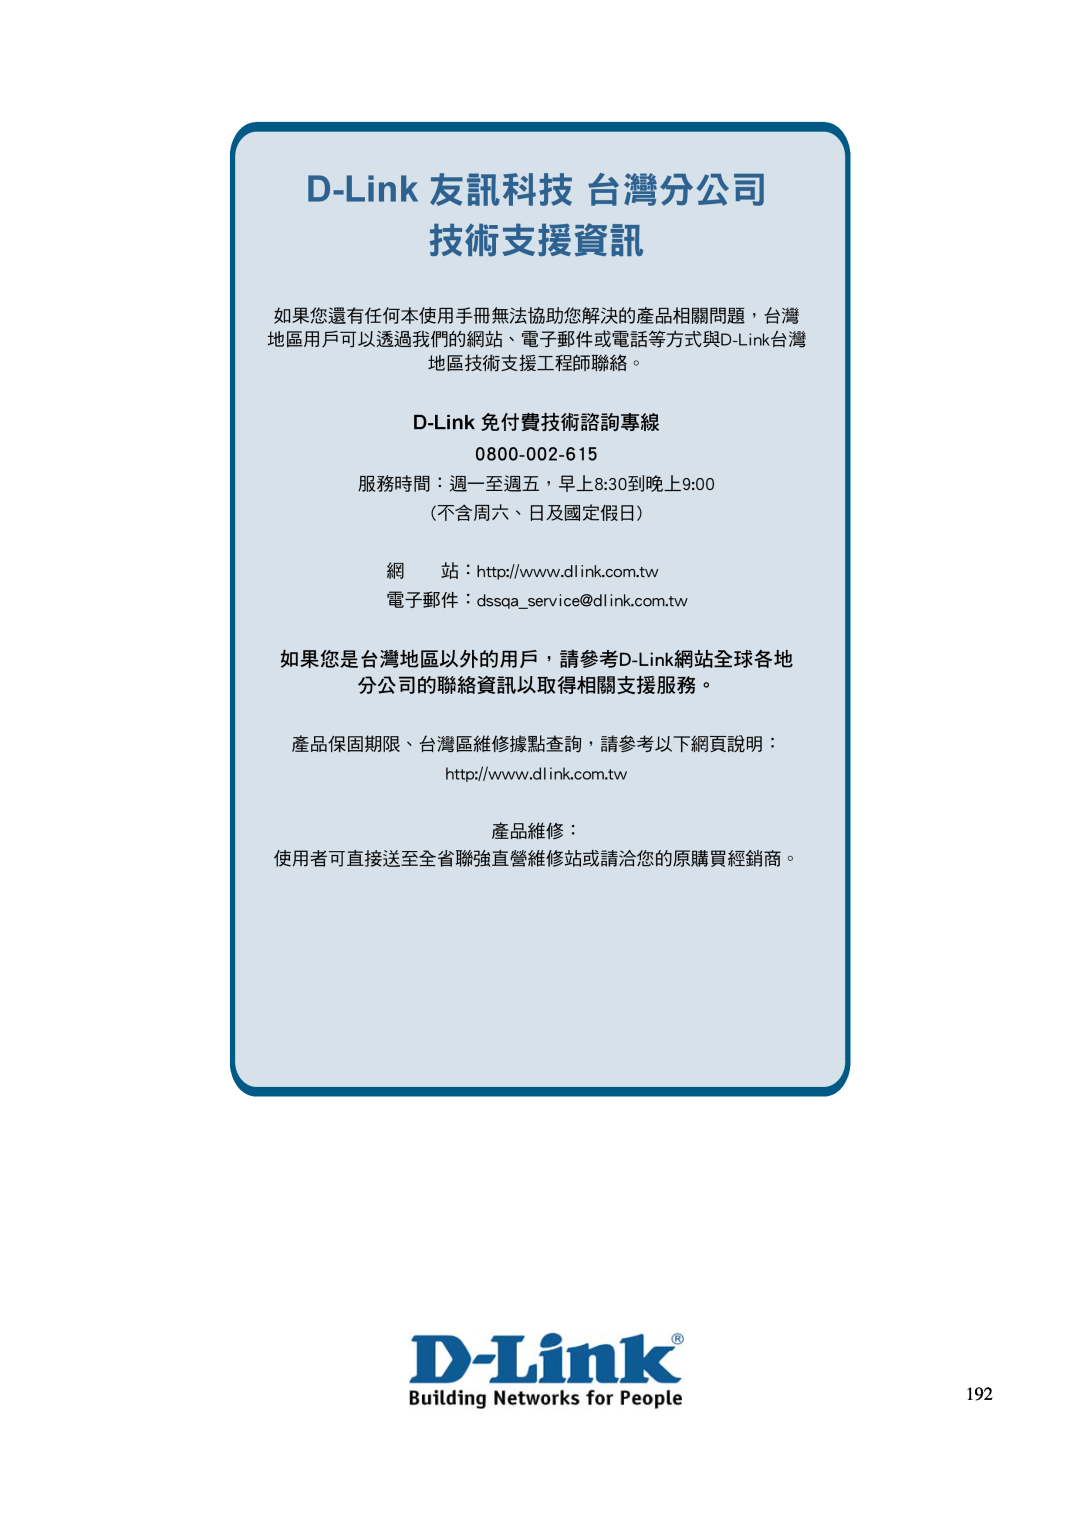 D-Link DGS-3100 D-Link 友訊科技 台灣分公司 技術支援資訊, D-Link 免付費技術諮詢專線, 0800-002-615, 如果您是台灣地區以外的用戶，請參考D-Link網站全球各地 分公司的聯絡資訊以取得相關支援服務。 